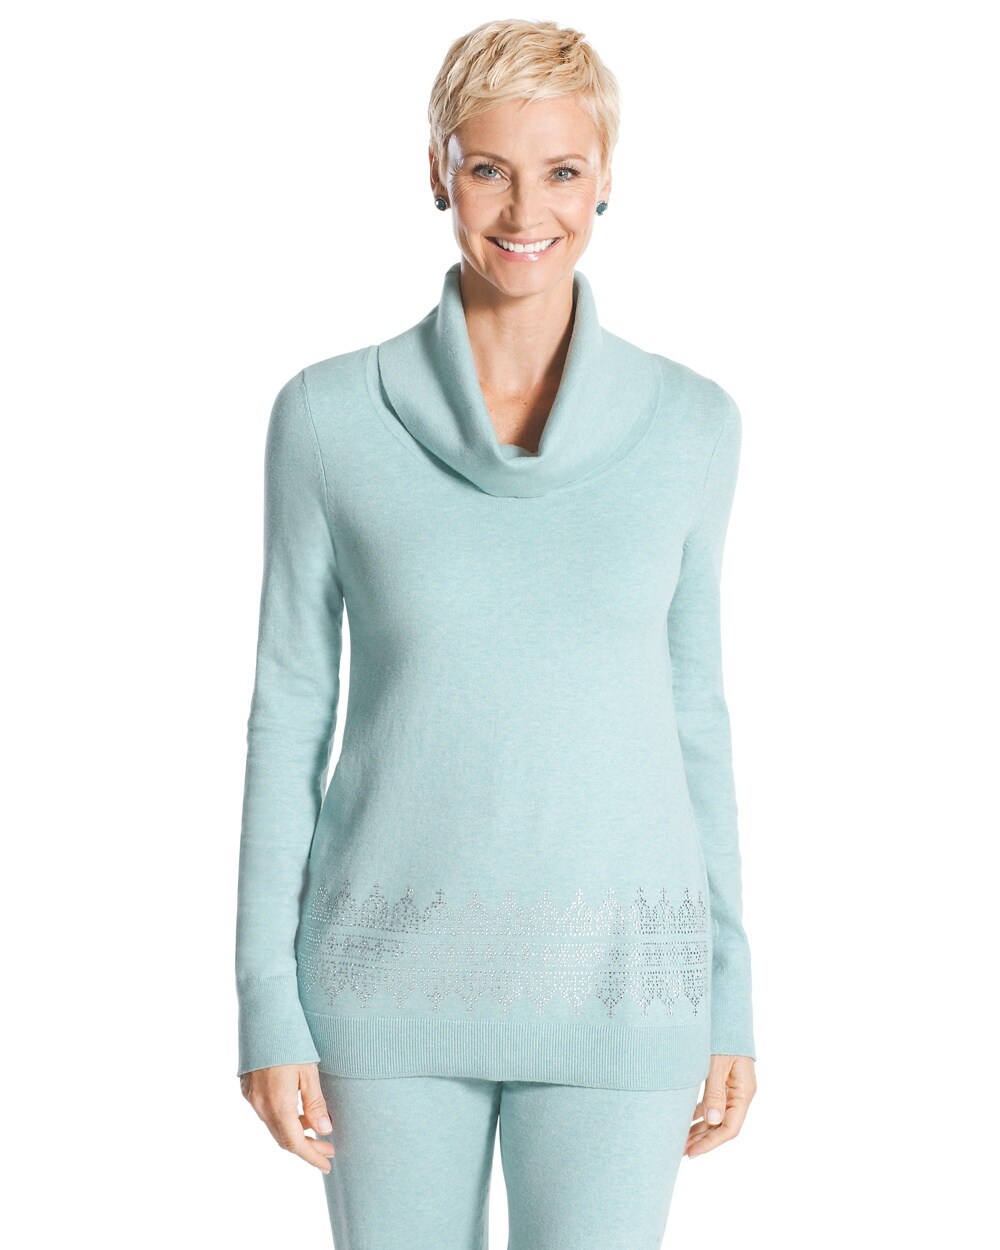 Zenergy Embellished Cotton Cashmere Sweater